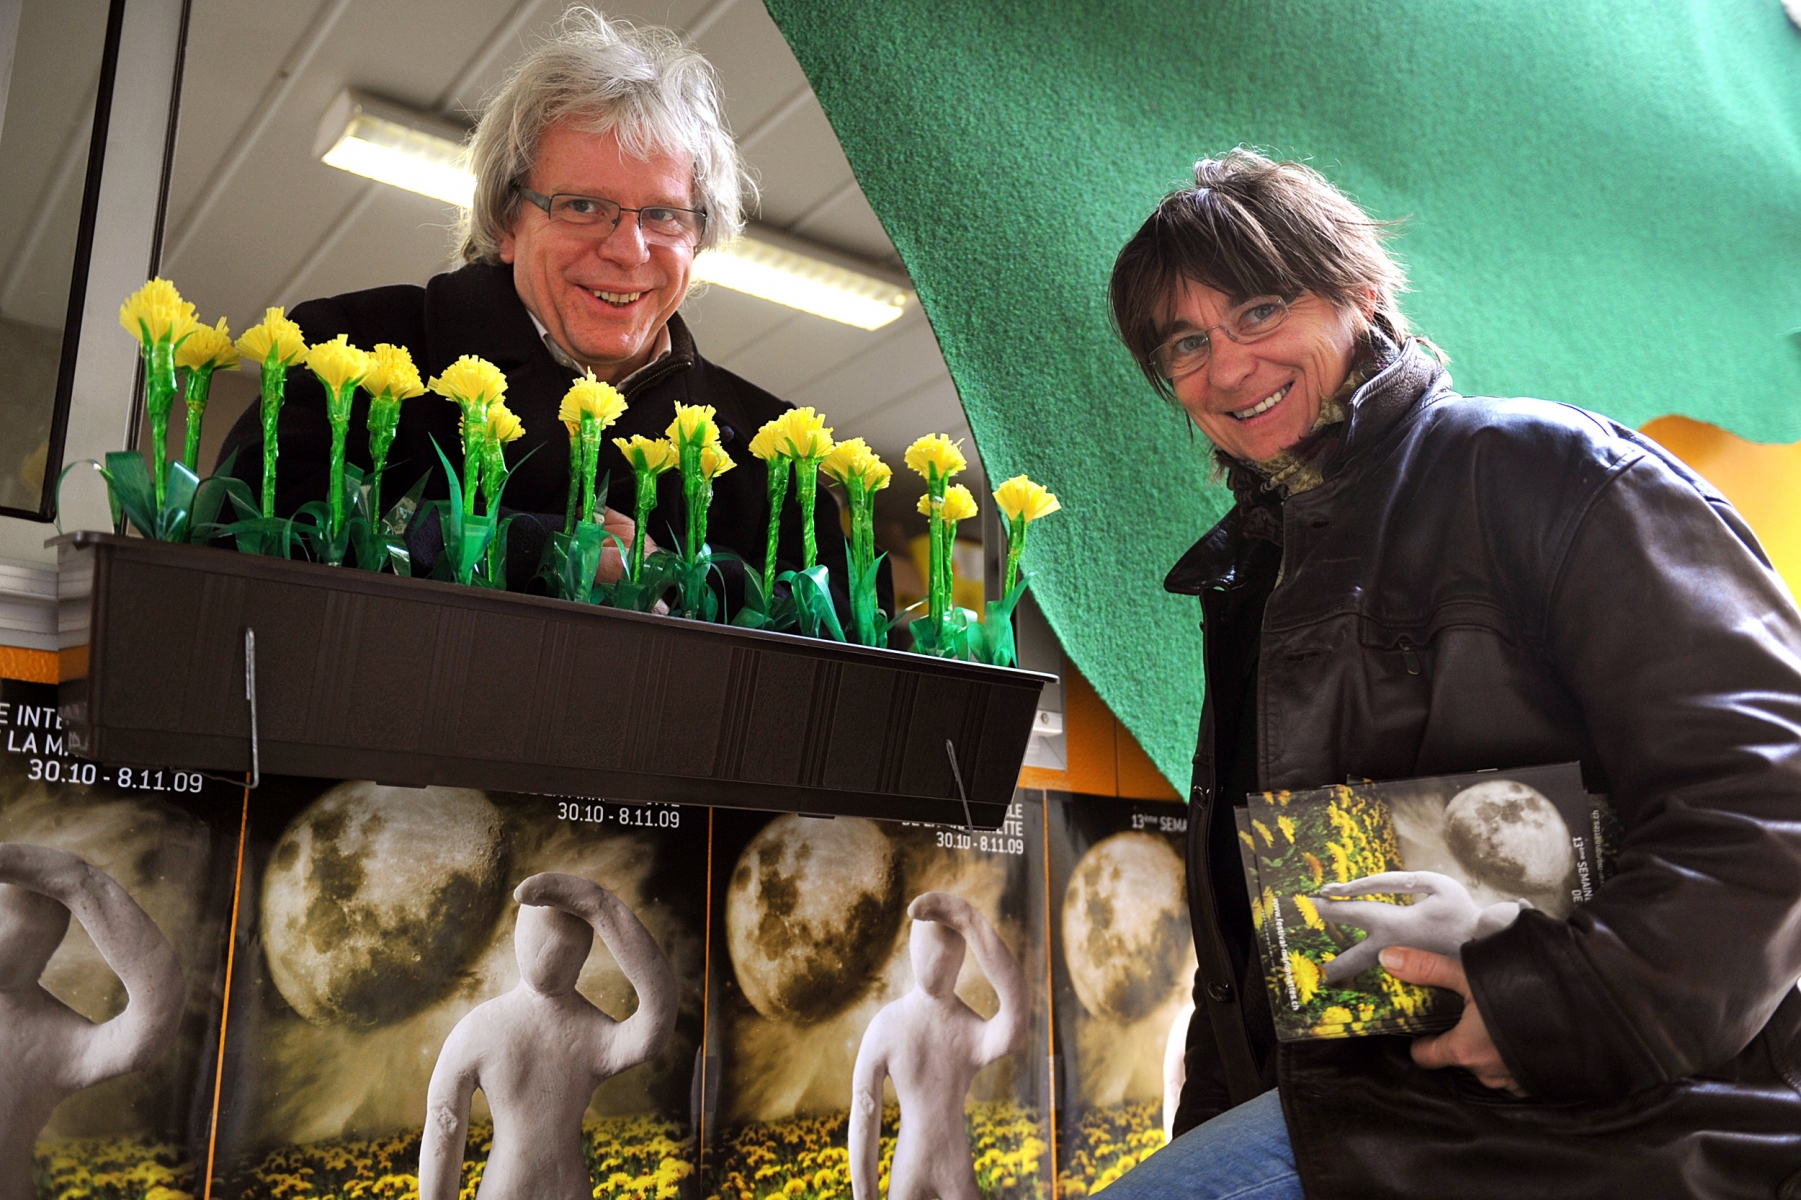 Un soutien de 5000 fr. a été octroyé aux Semaines internationales de la marionnette en hommage à leur fondateur Yves Baudin, décédé en février dernier. Ici, avec son épouse Corinne, en 2009.